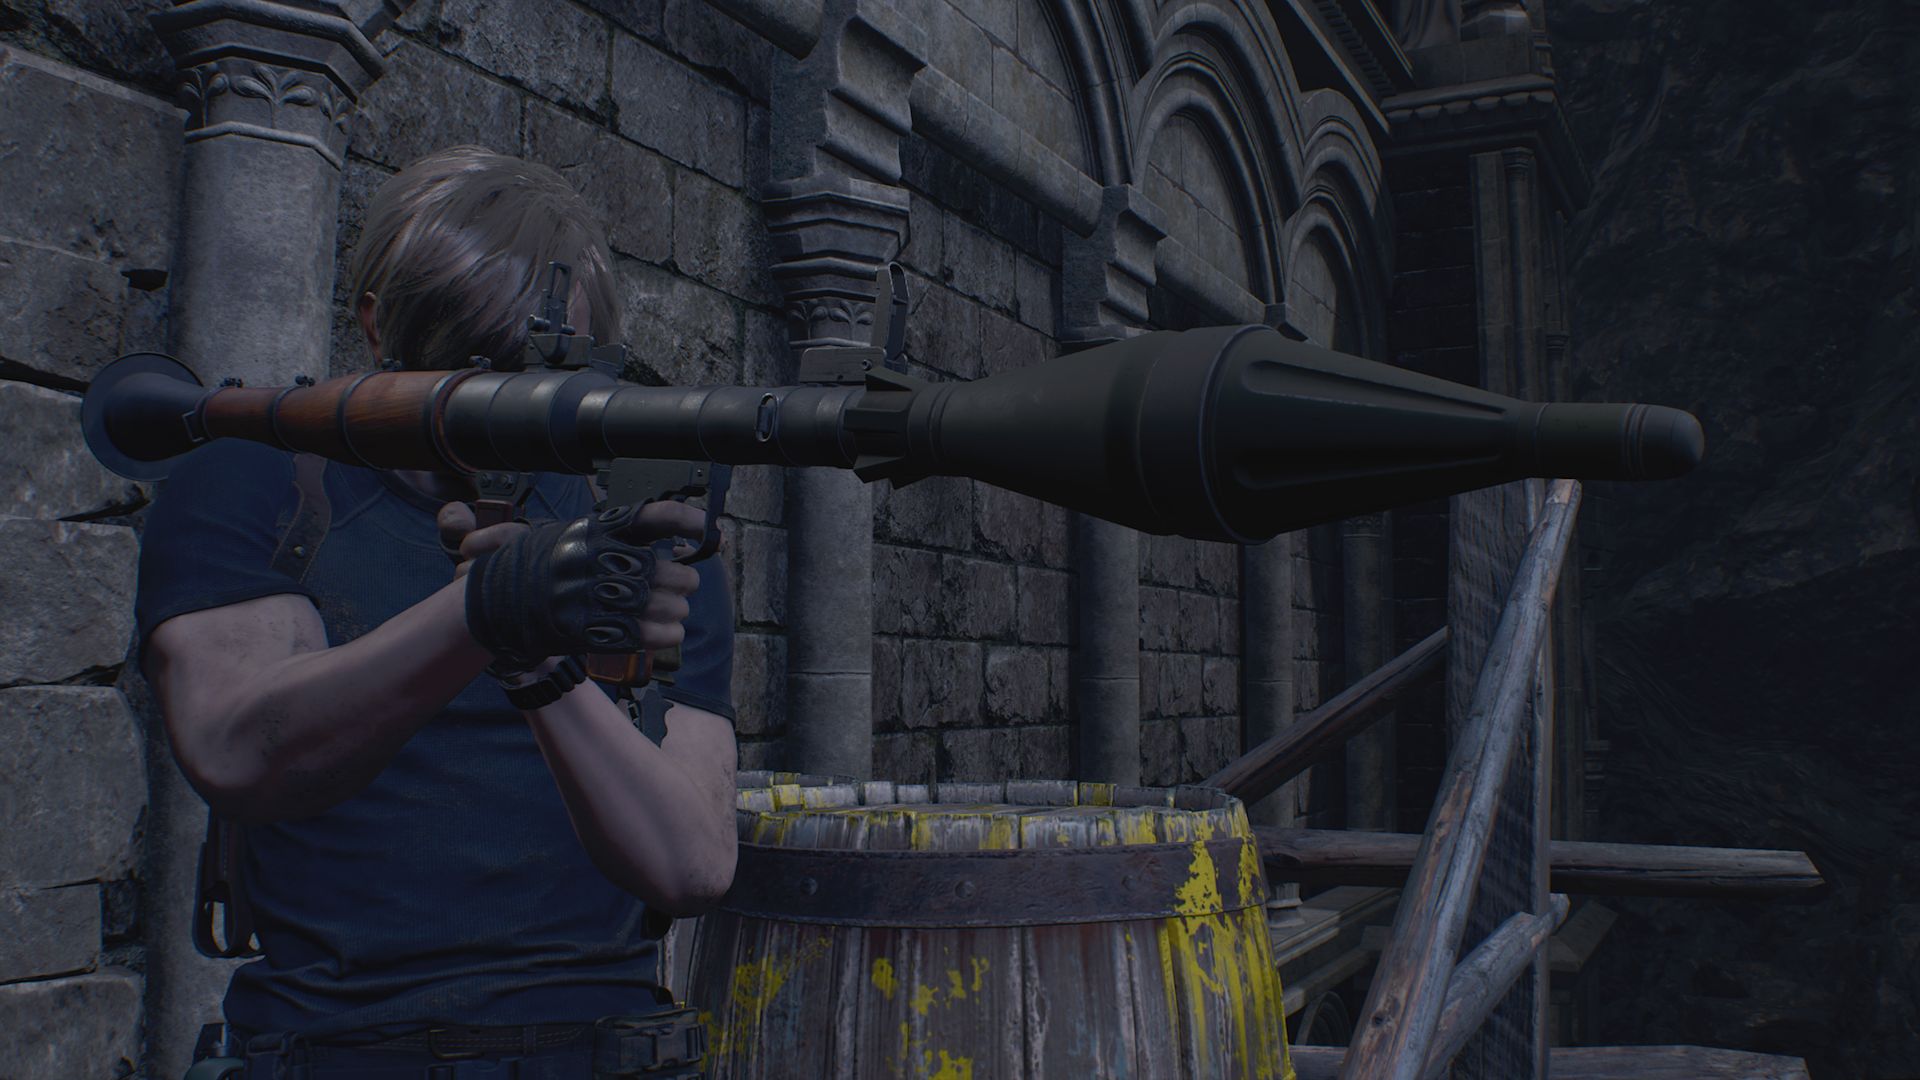 Bilder zu Resident Evil 4 Remake - Alle Herausforderungen erklärt und gelöst